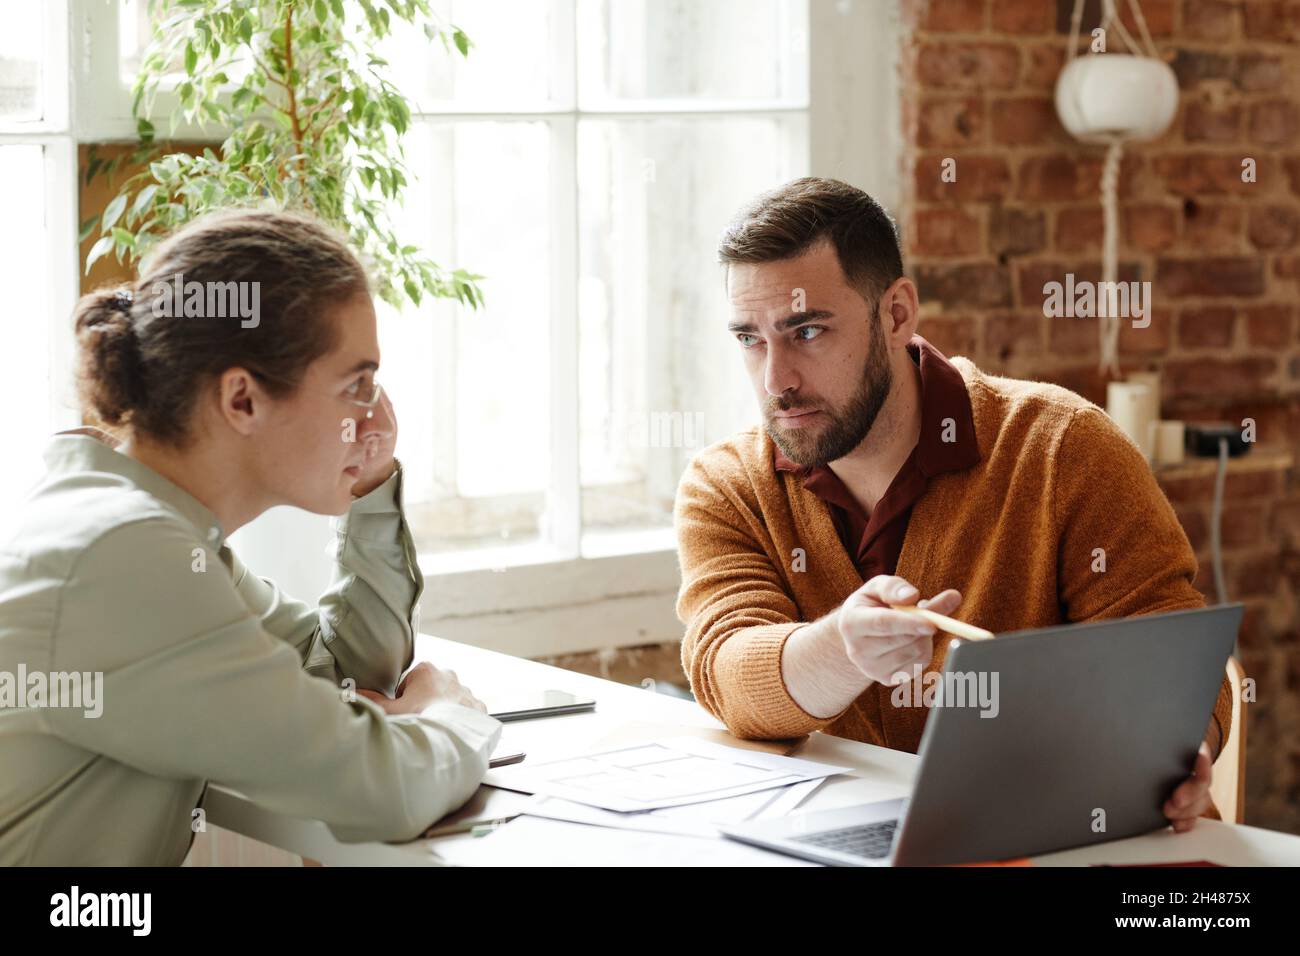 Ritratto di due persone creative che usano il laptop mentre discutono il progetto di design in studio, spazio copia Foto Stock